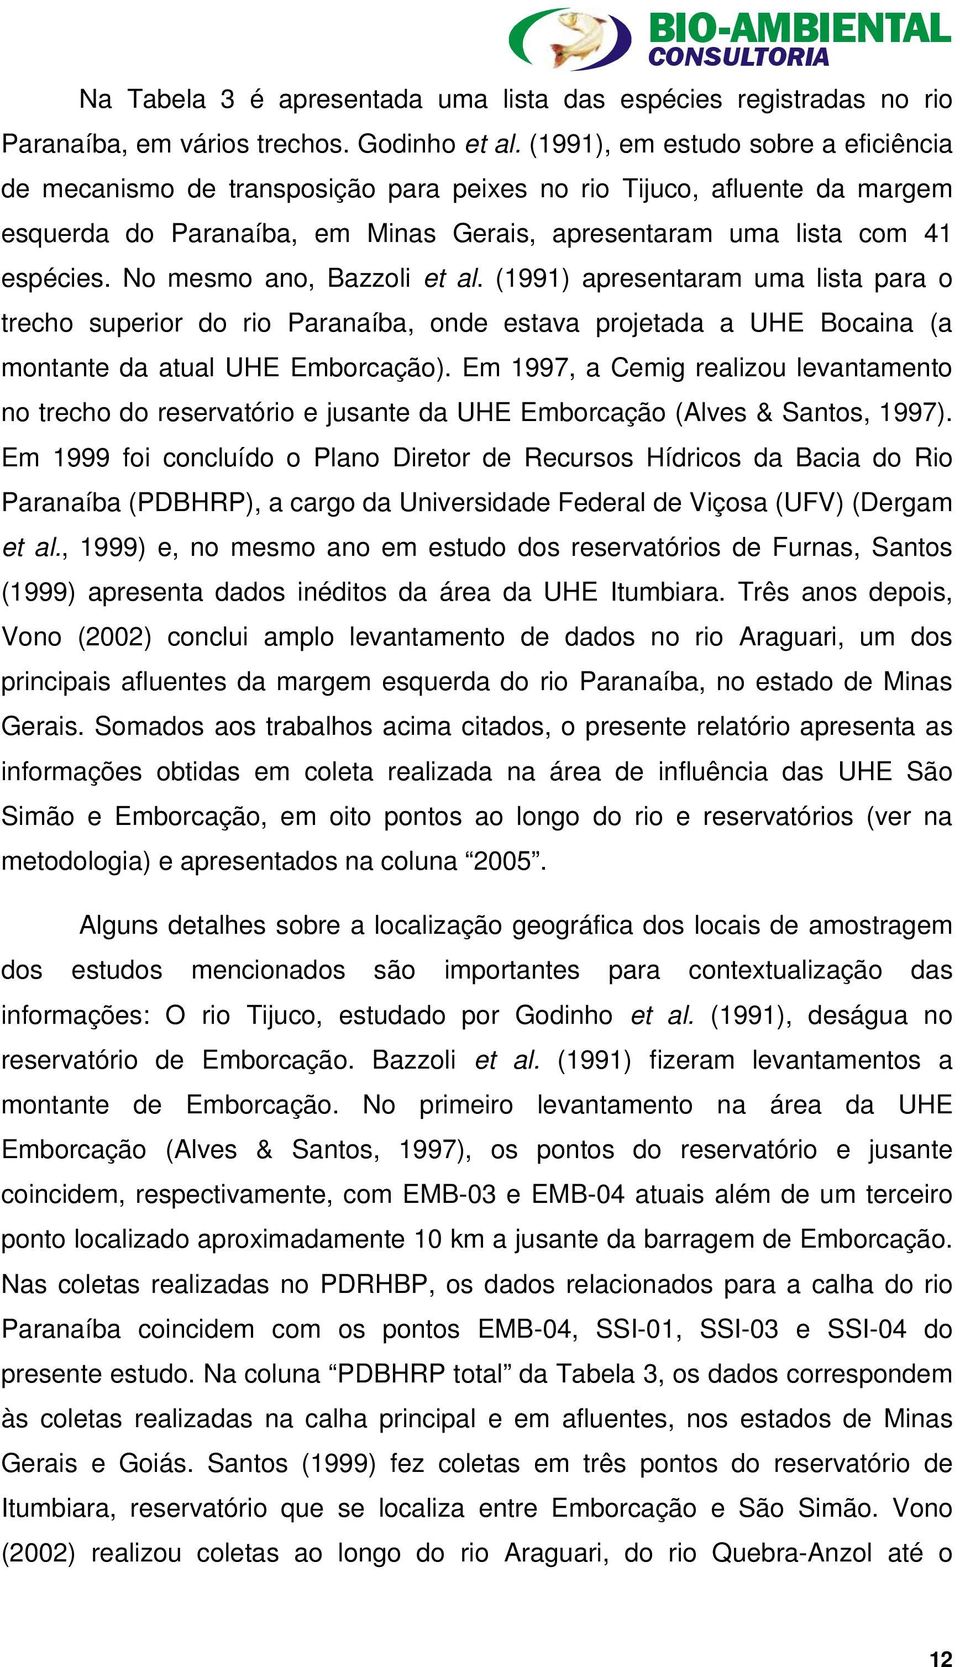 No mesmo ano, Bazzoli et al. (1991) apresentaram uma lista para o trecho superior do rio Paranaíba, onde estava projetada a UHE Bocaina (a montante da atual UHE Emborcação).